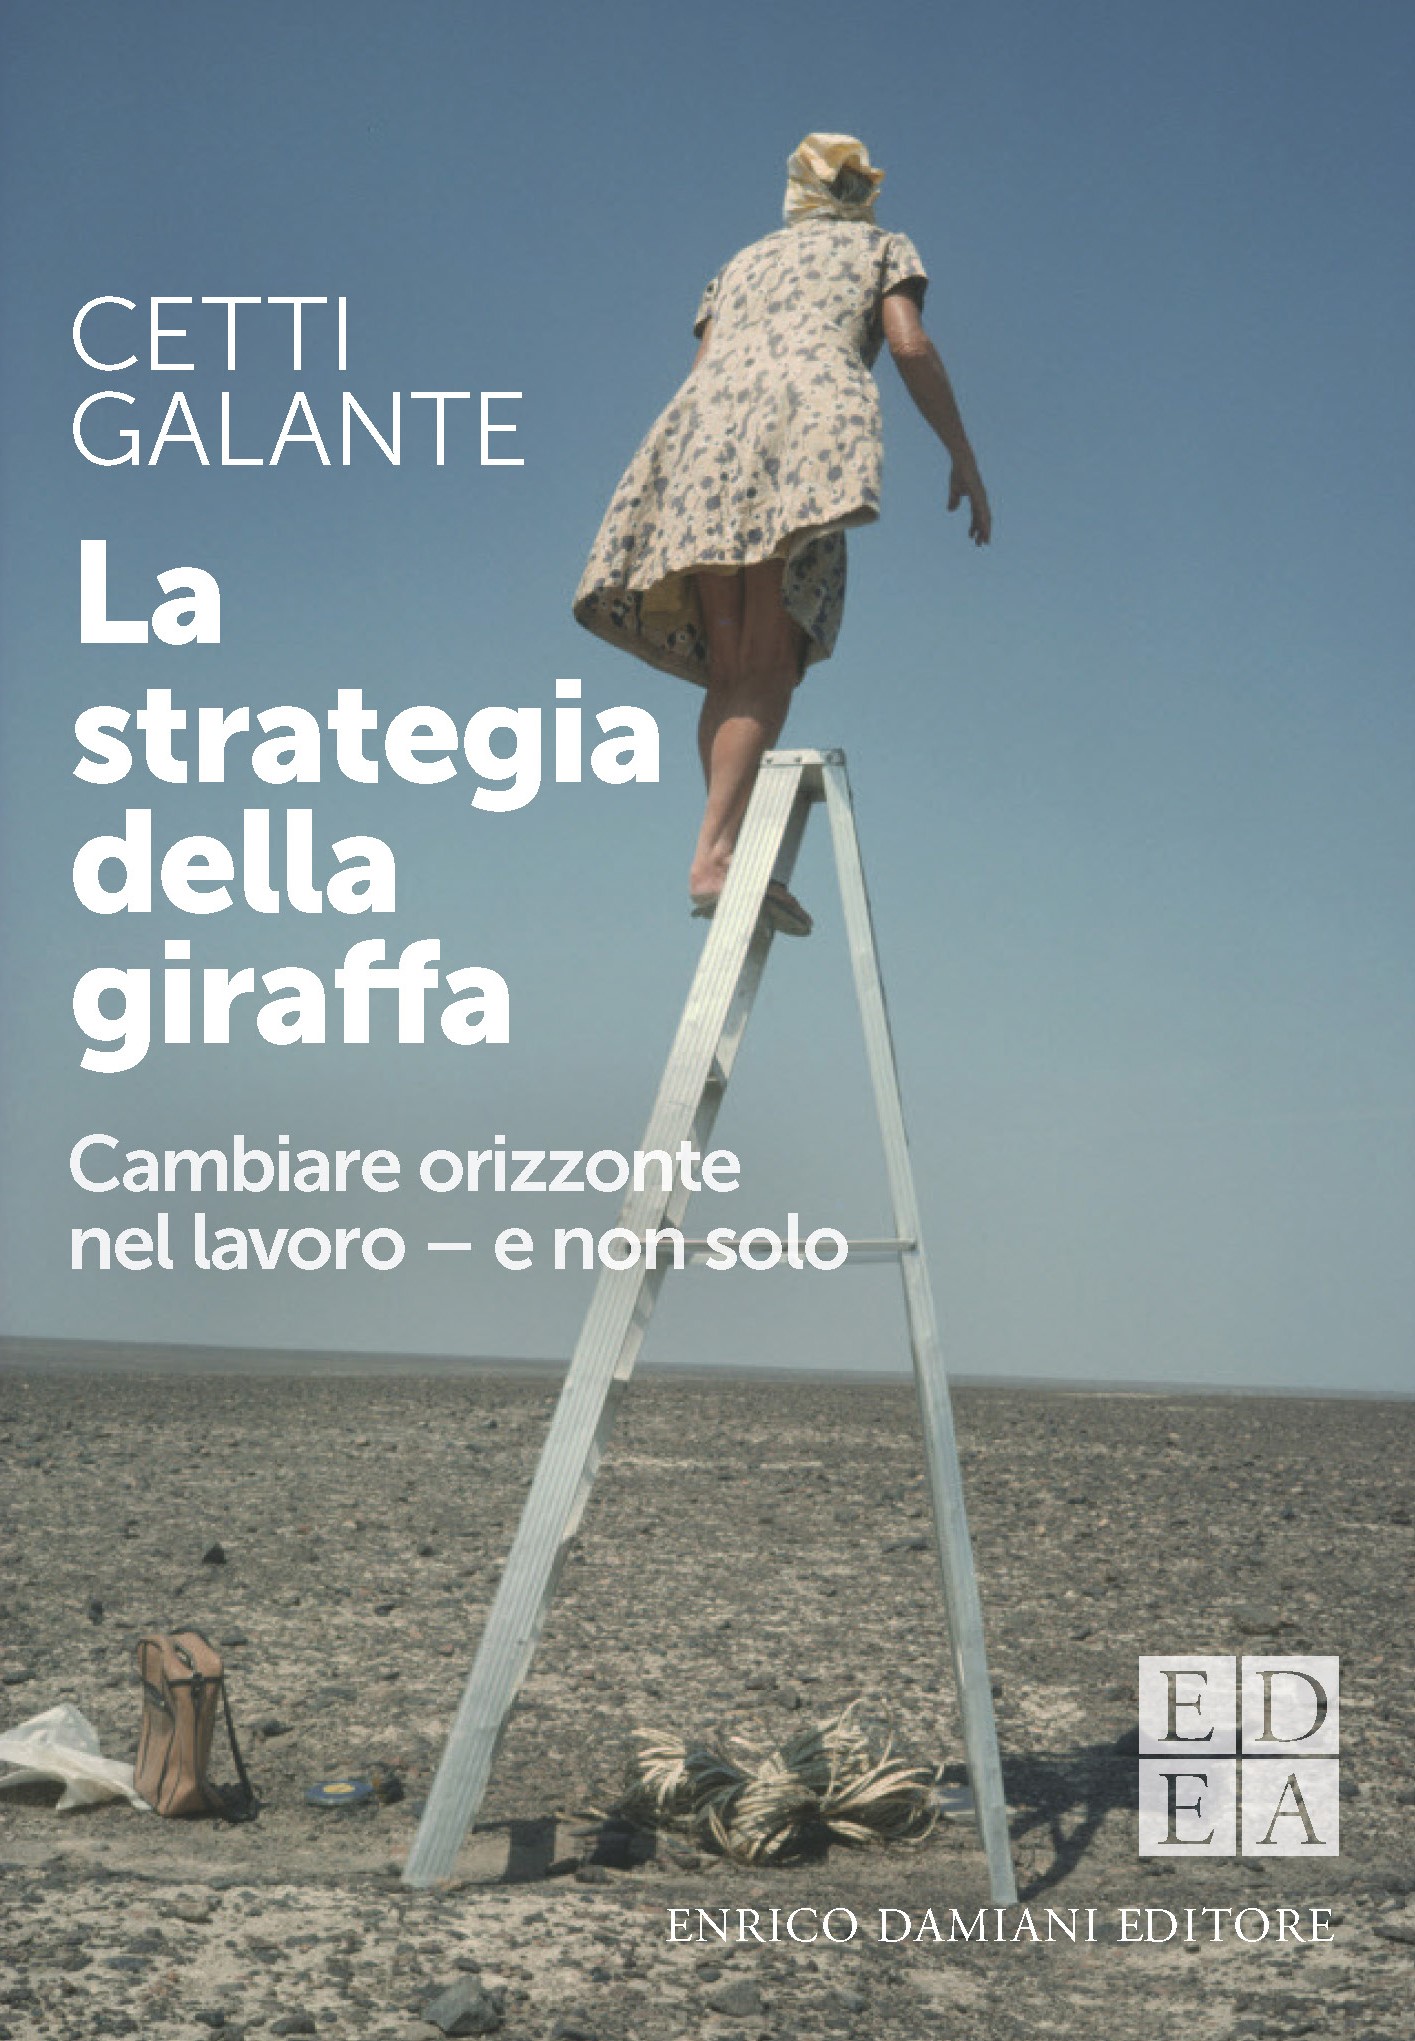 Cetti Galante (Intoo): per aver successo nel mondo del lavoro ci vuole la strategia della giraffa